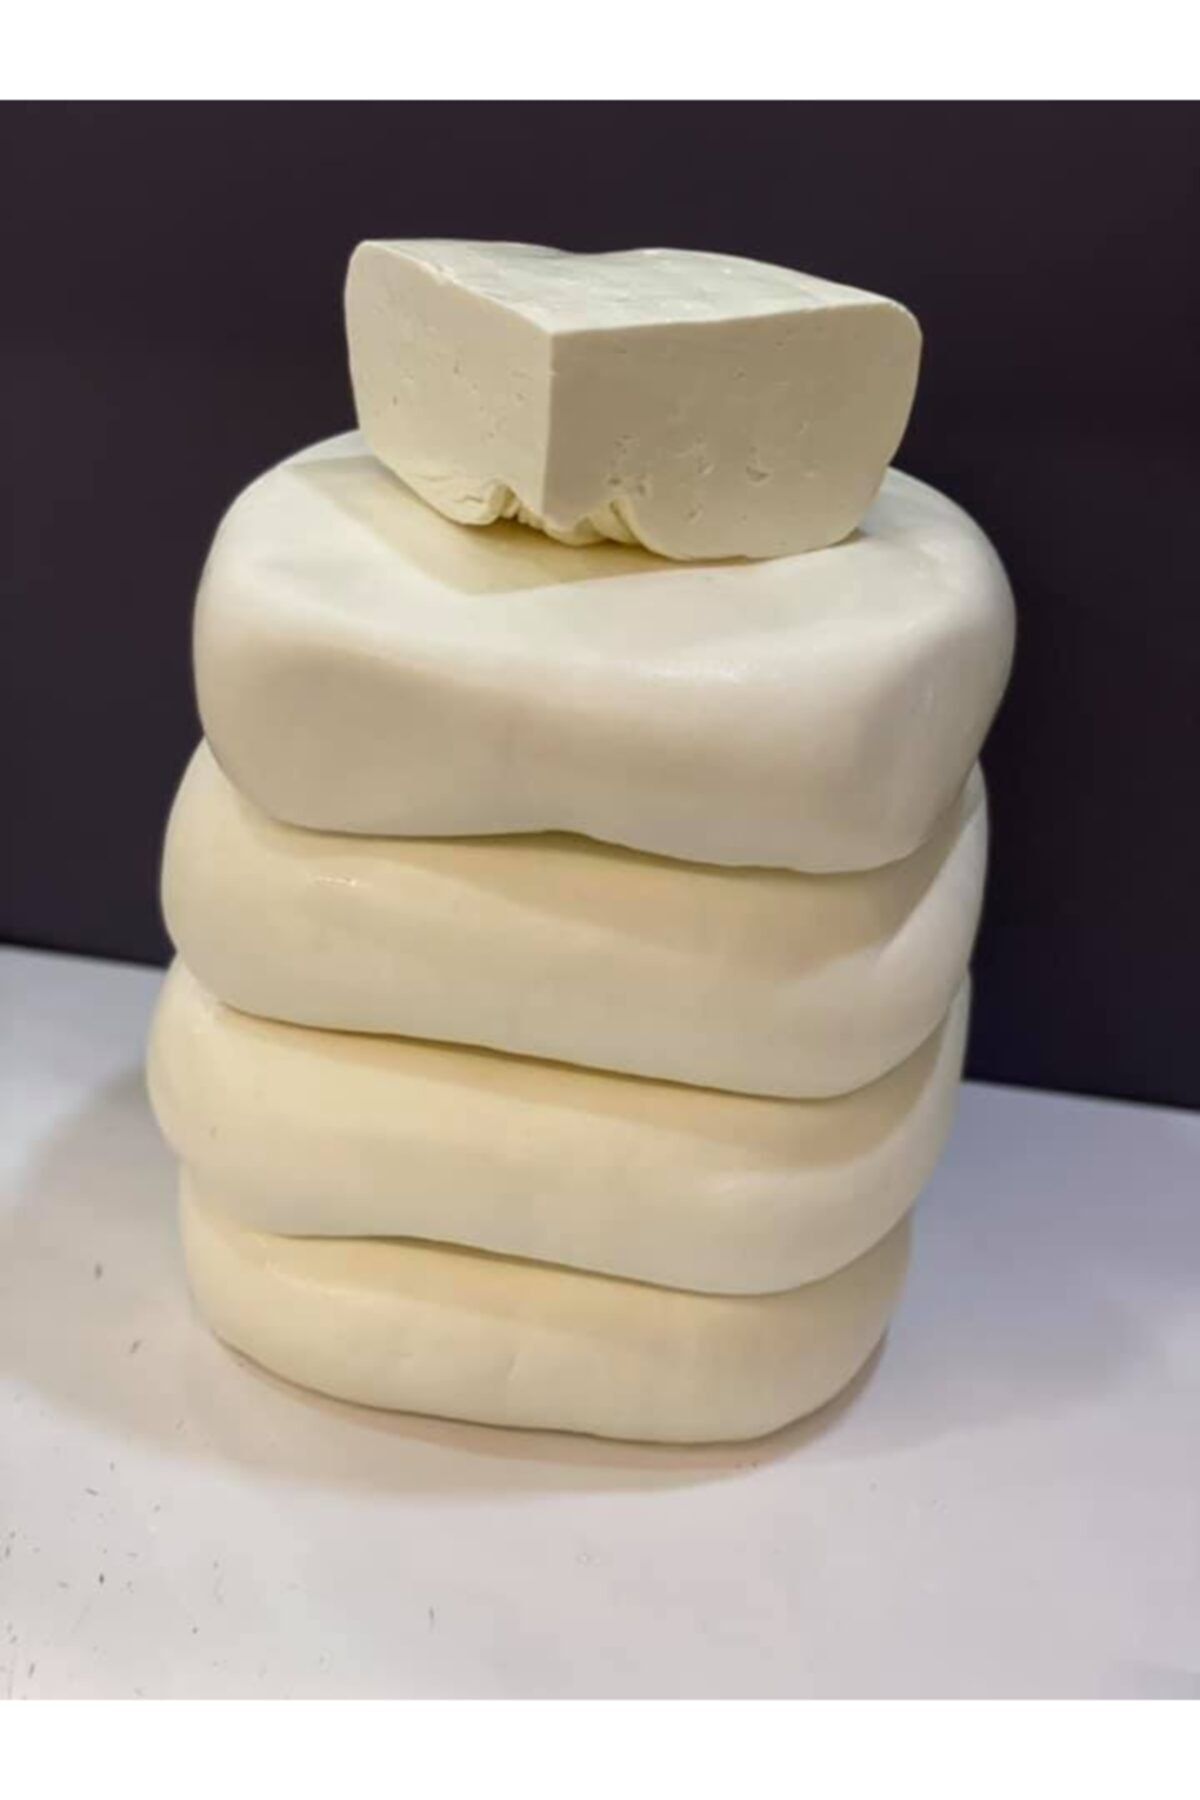 Yakut Süt Ürünleri Yakut Süt Köy Tipi Yarım Yağlı Taze Beyaz Peynir Kova 15kg